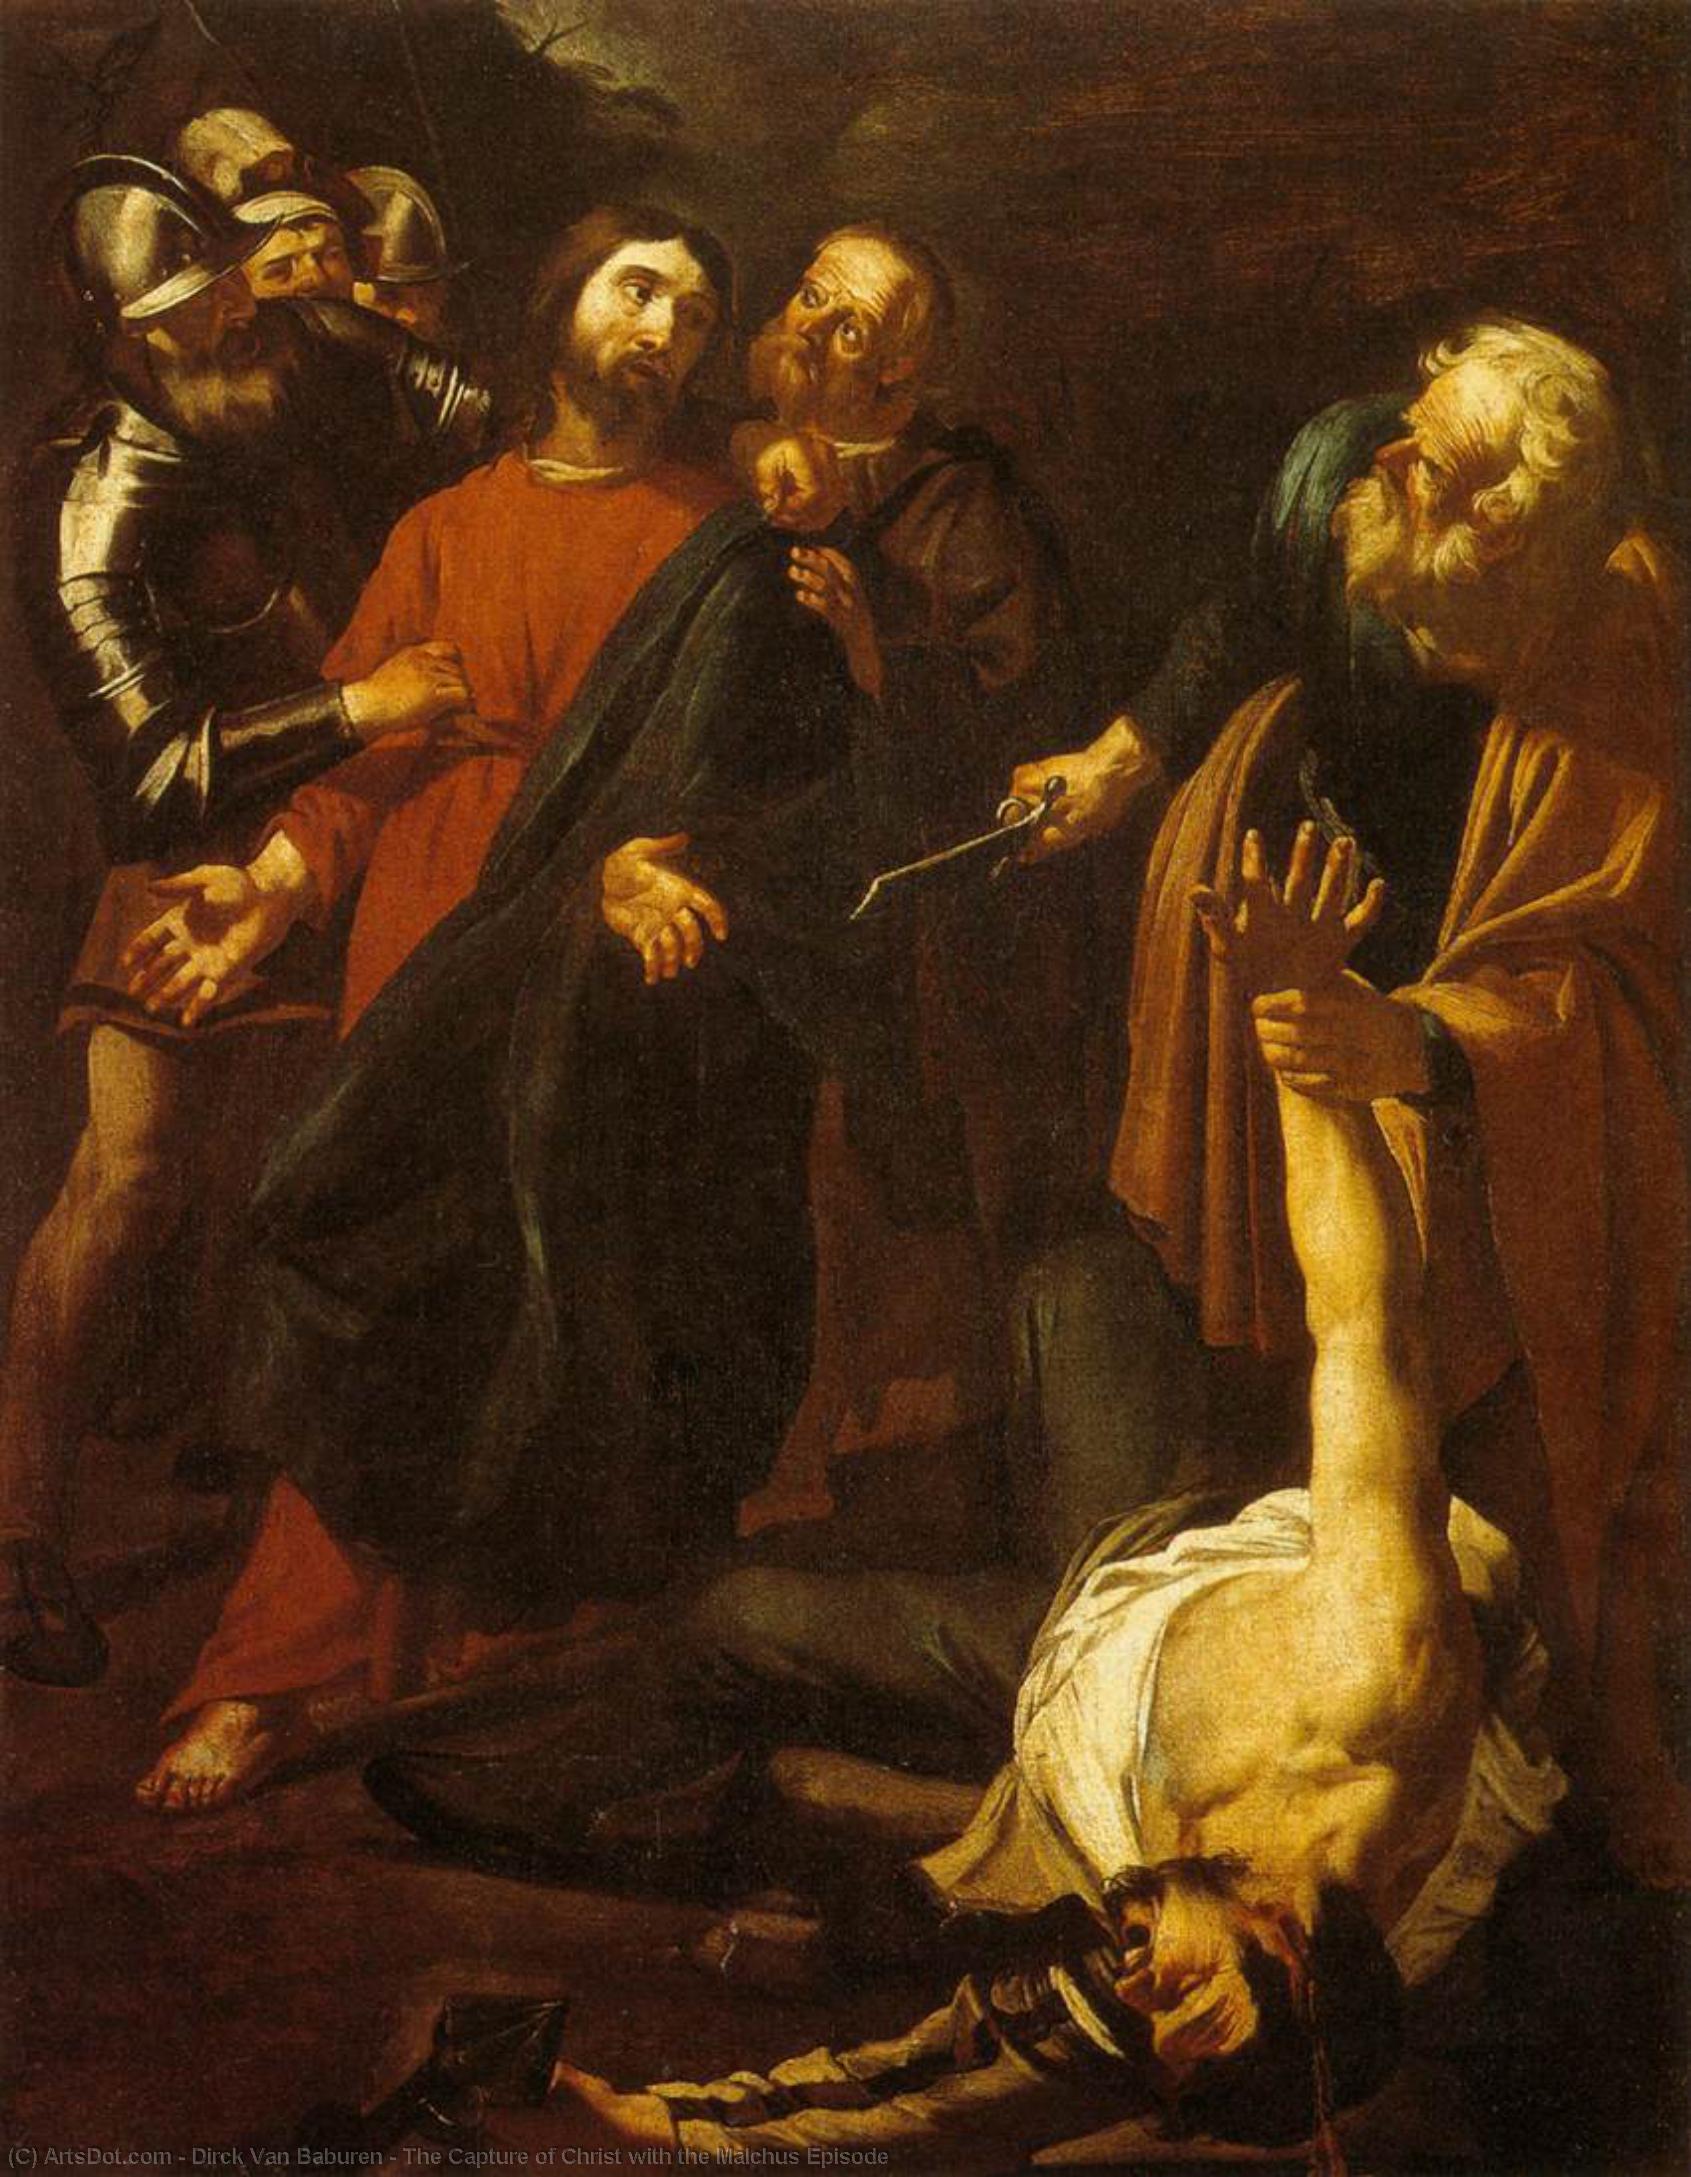 Wikioo.org - Bách khoa toàn thư về mỹ thuật - Vẽ tranh, Tác phẩm nghệ thuật Dirck Van Baburen - The Capture of Christ with the Malchus Episode